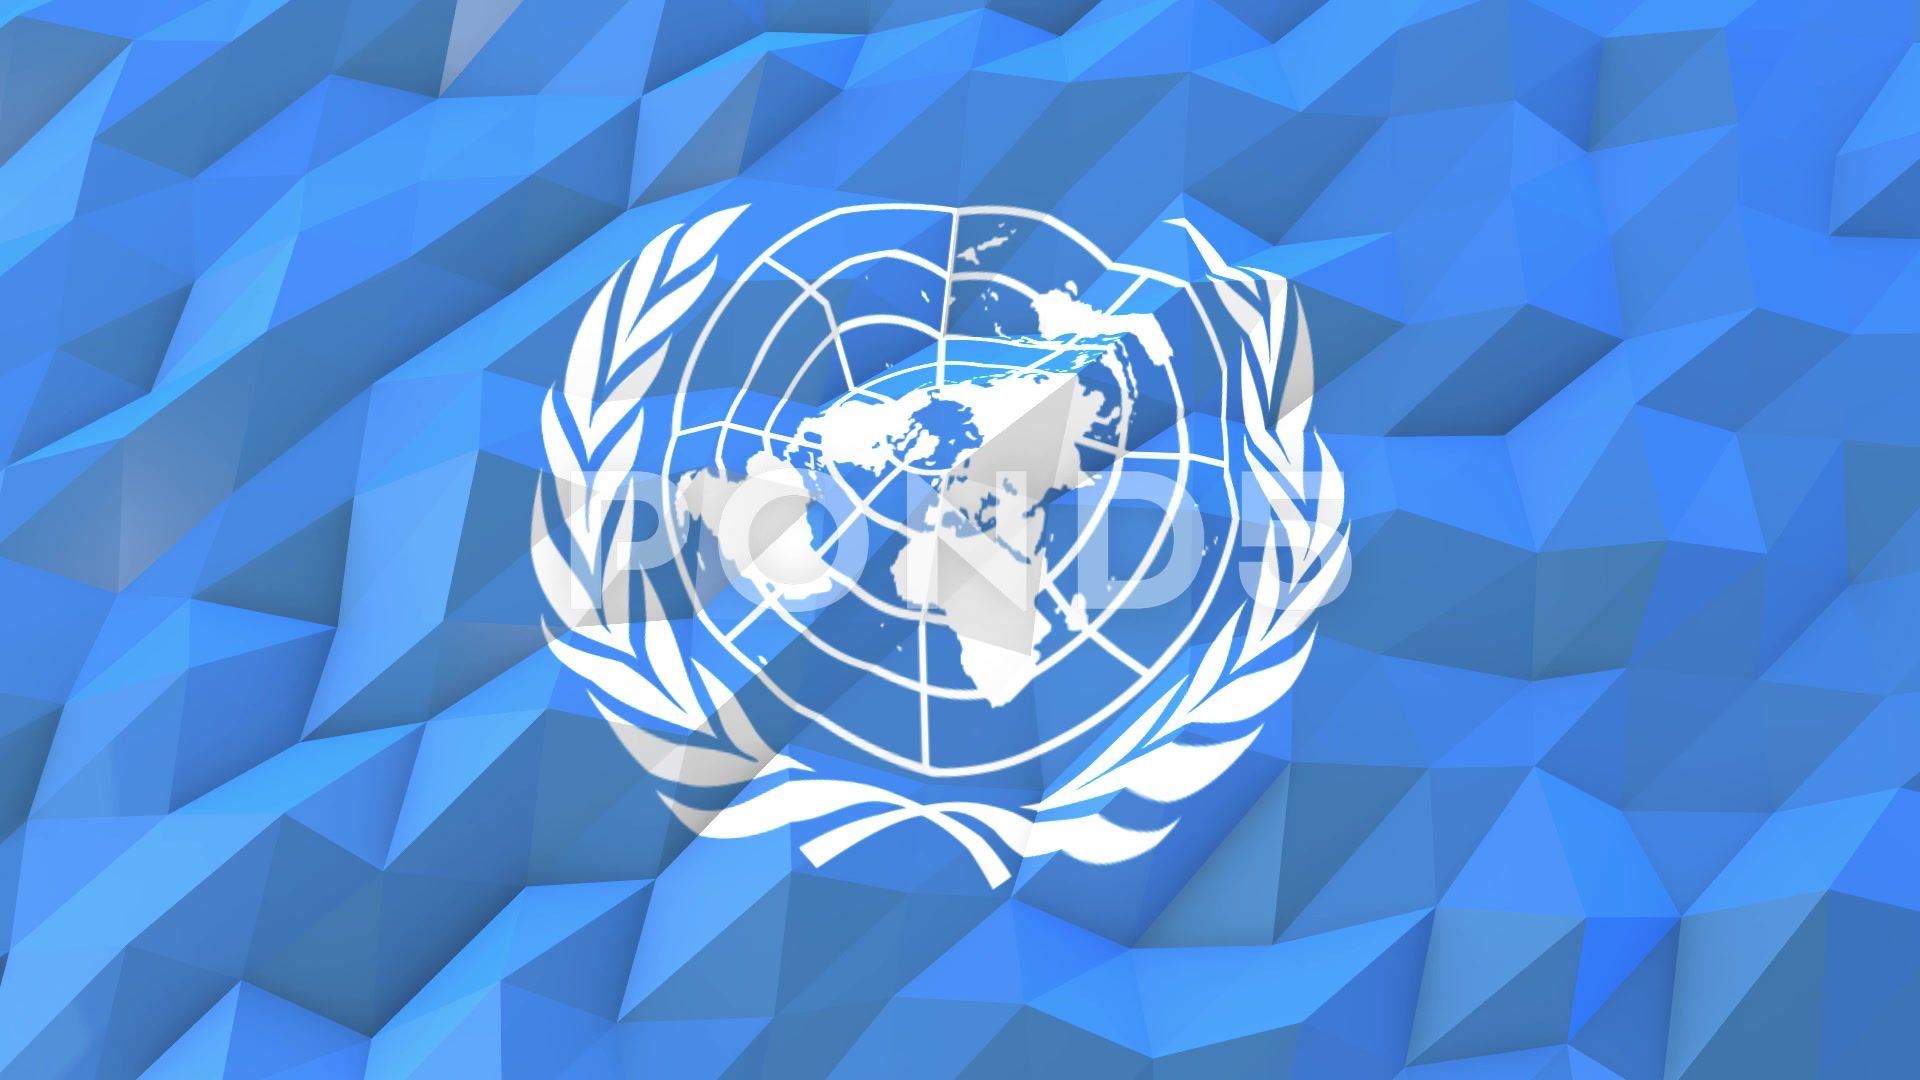 Free download Flag of United Nations 3D Wallpaper Illustration Hi Res 66416526 [1920x1080] for your Desktop, Mobile & Tablet. Explore United Nations Wallpaper. United Nations Wallpaper, United Nations Flag